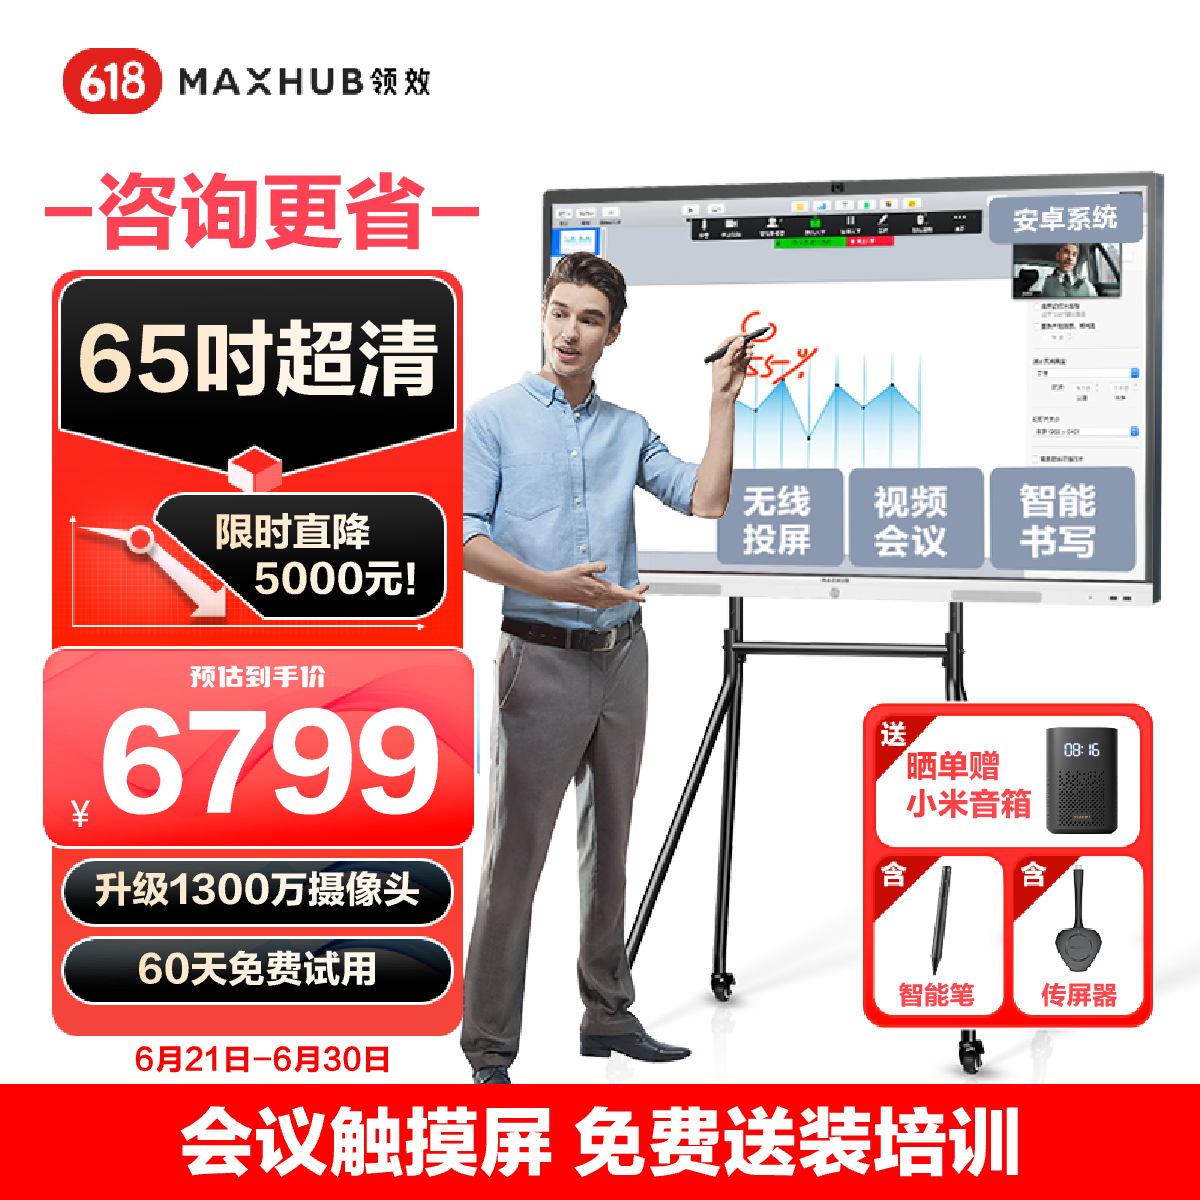 maxhub会议平板 V6新锐65英寸 触摸视频会议电视一体机 投屏电视智慧屏 E65+支架+传屏+笔 企采商用显示